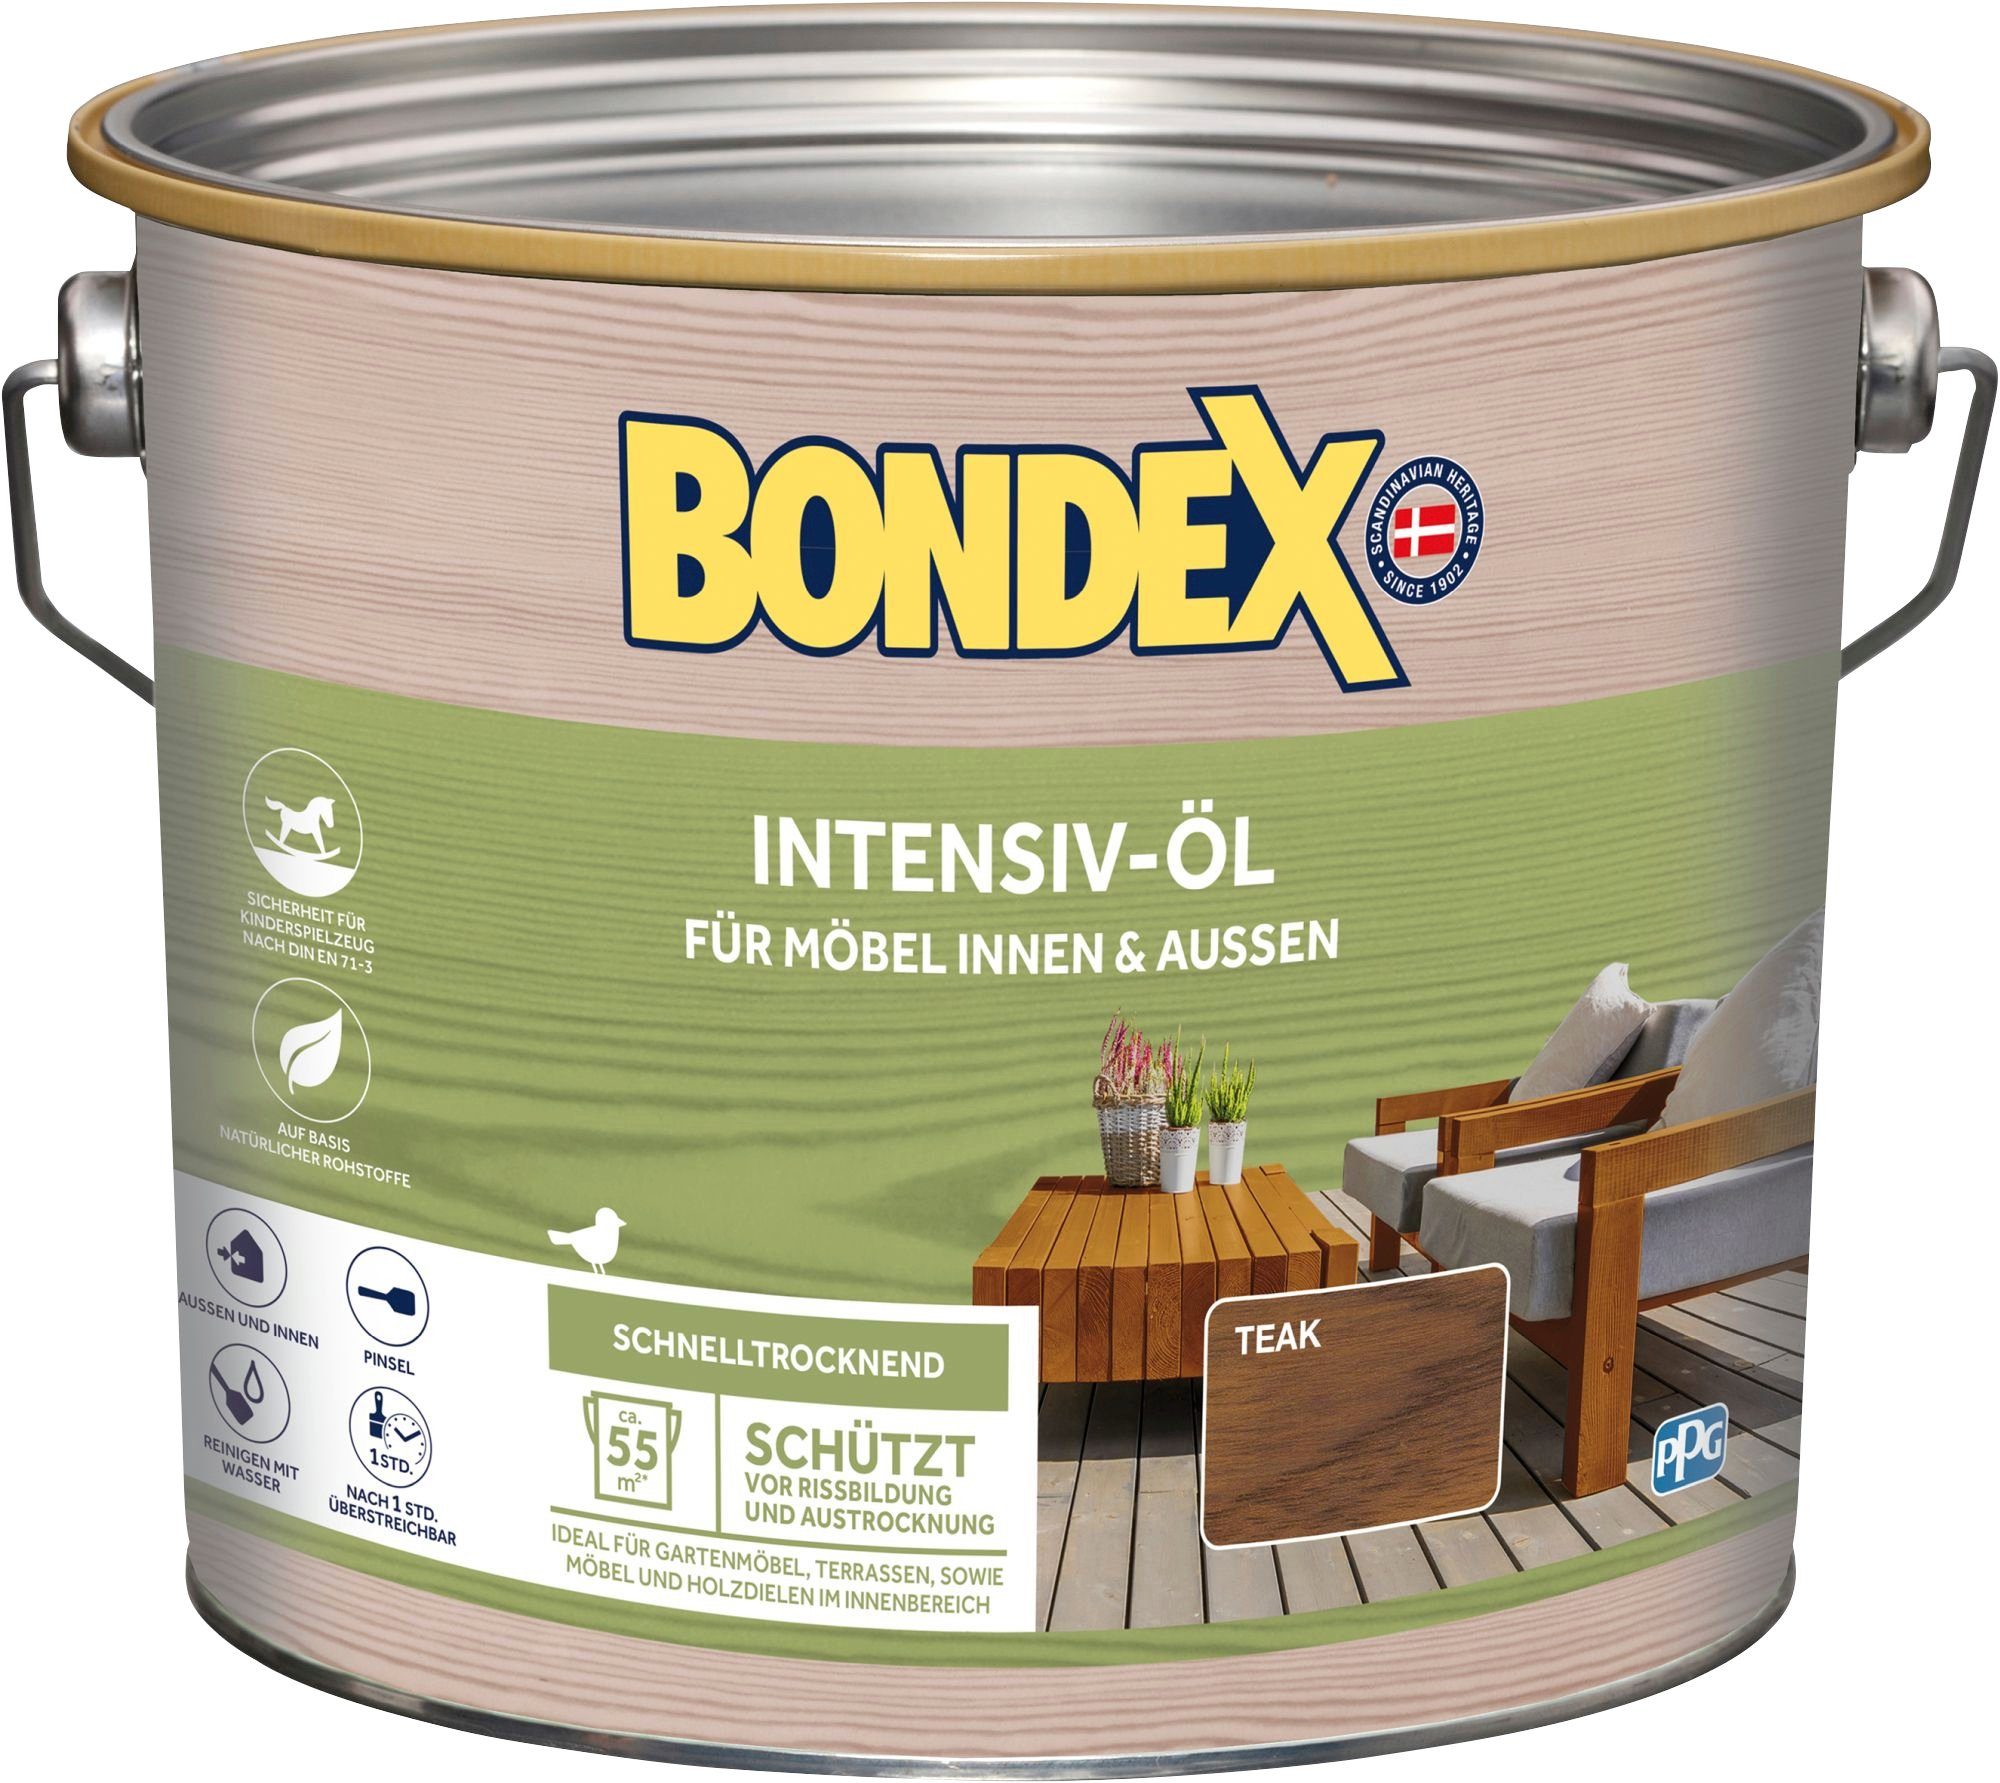 Teak, INTENSIV-ÖL, Inhalt Holzöl Bondex 0,75 Liter